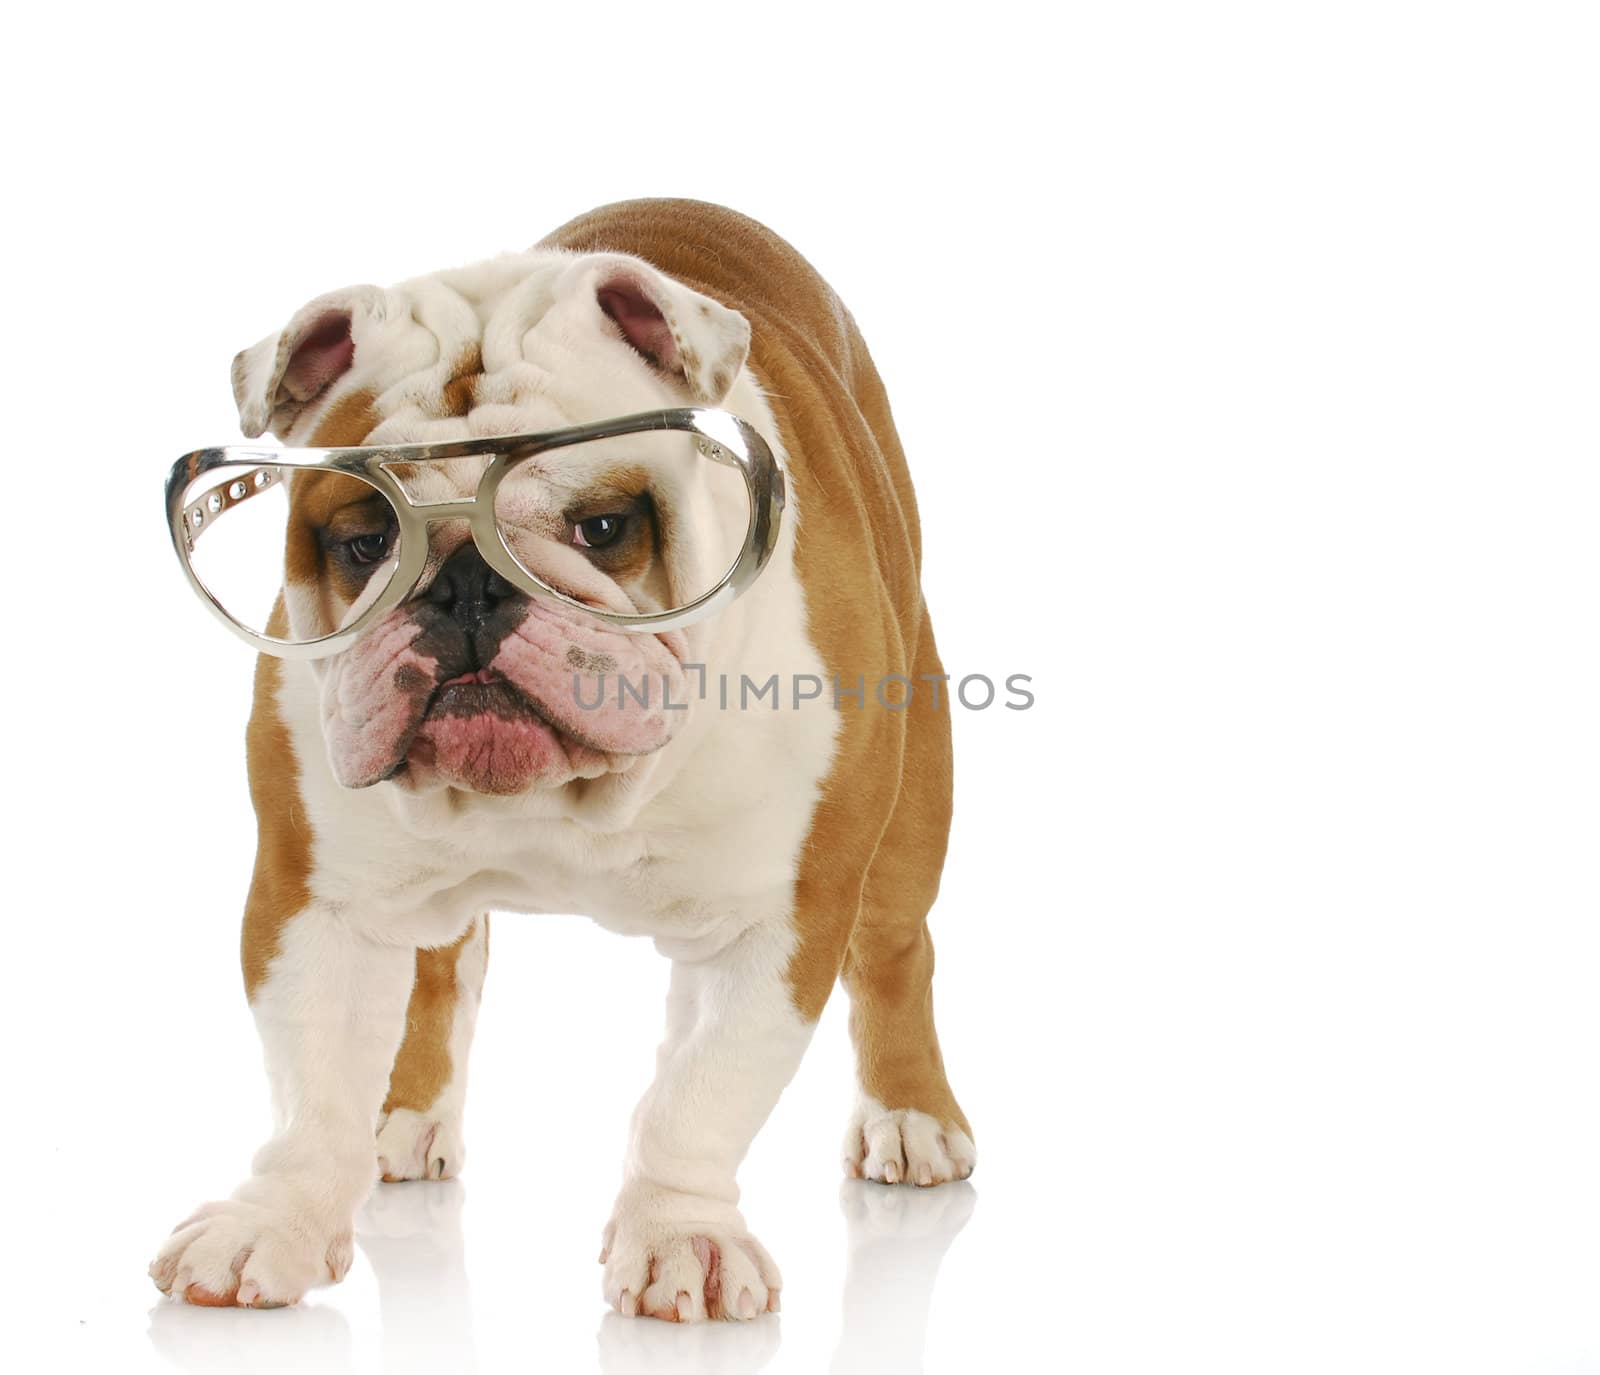 english bulldog wearing large glasses with reflection on white background